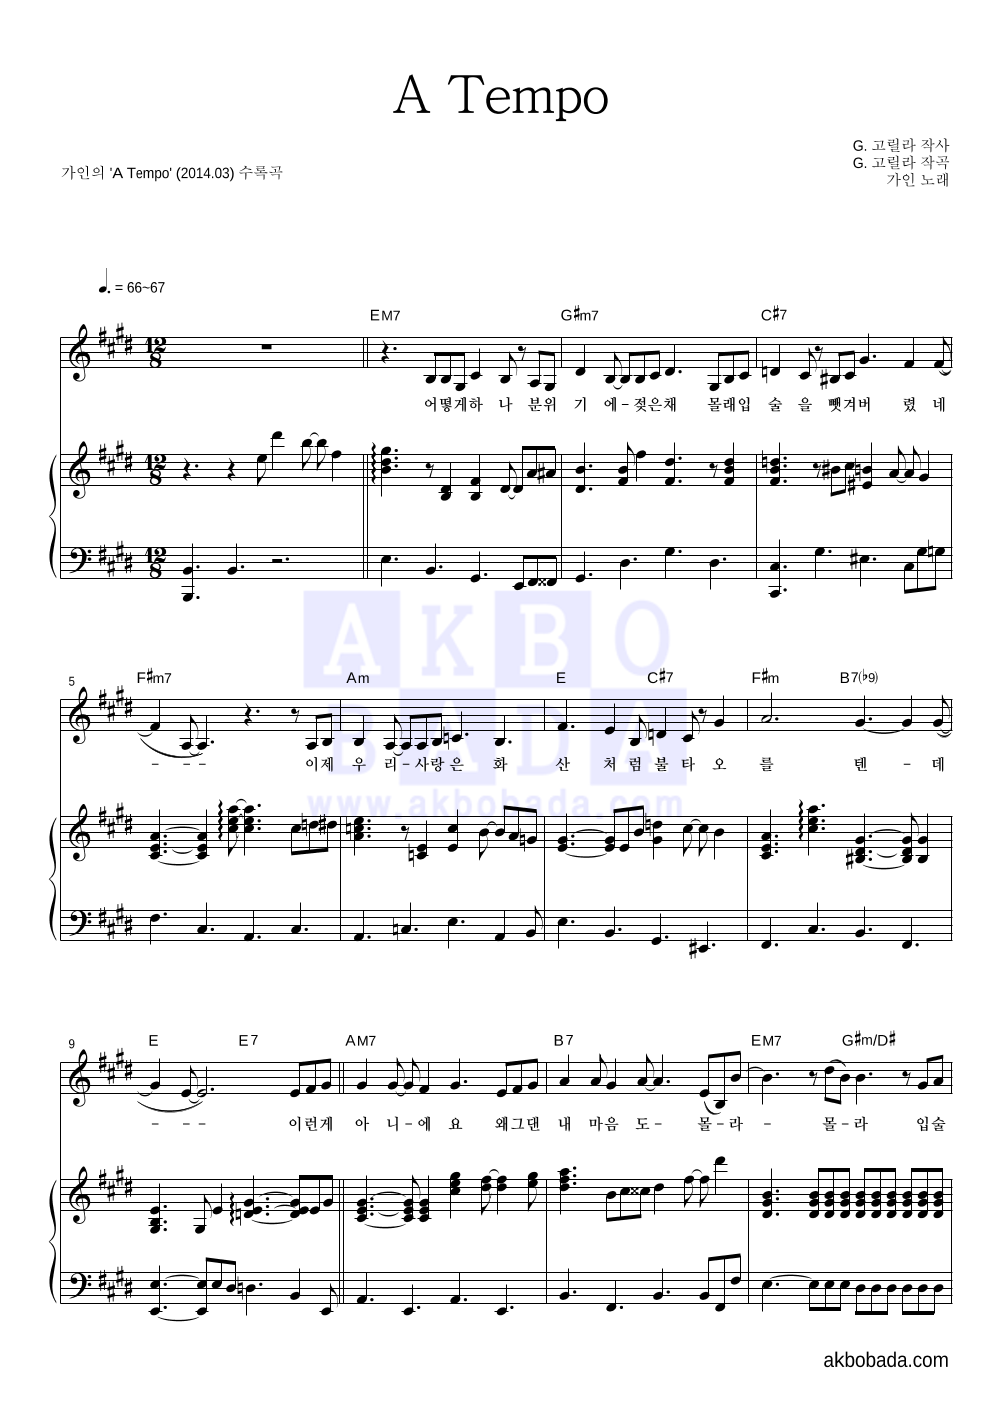 가인(브라운 아이드 걸스) - A Tempo 피아노 3단 악보 